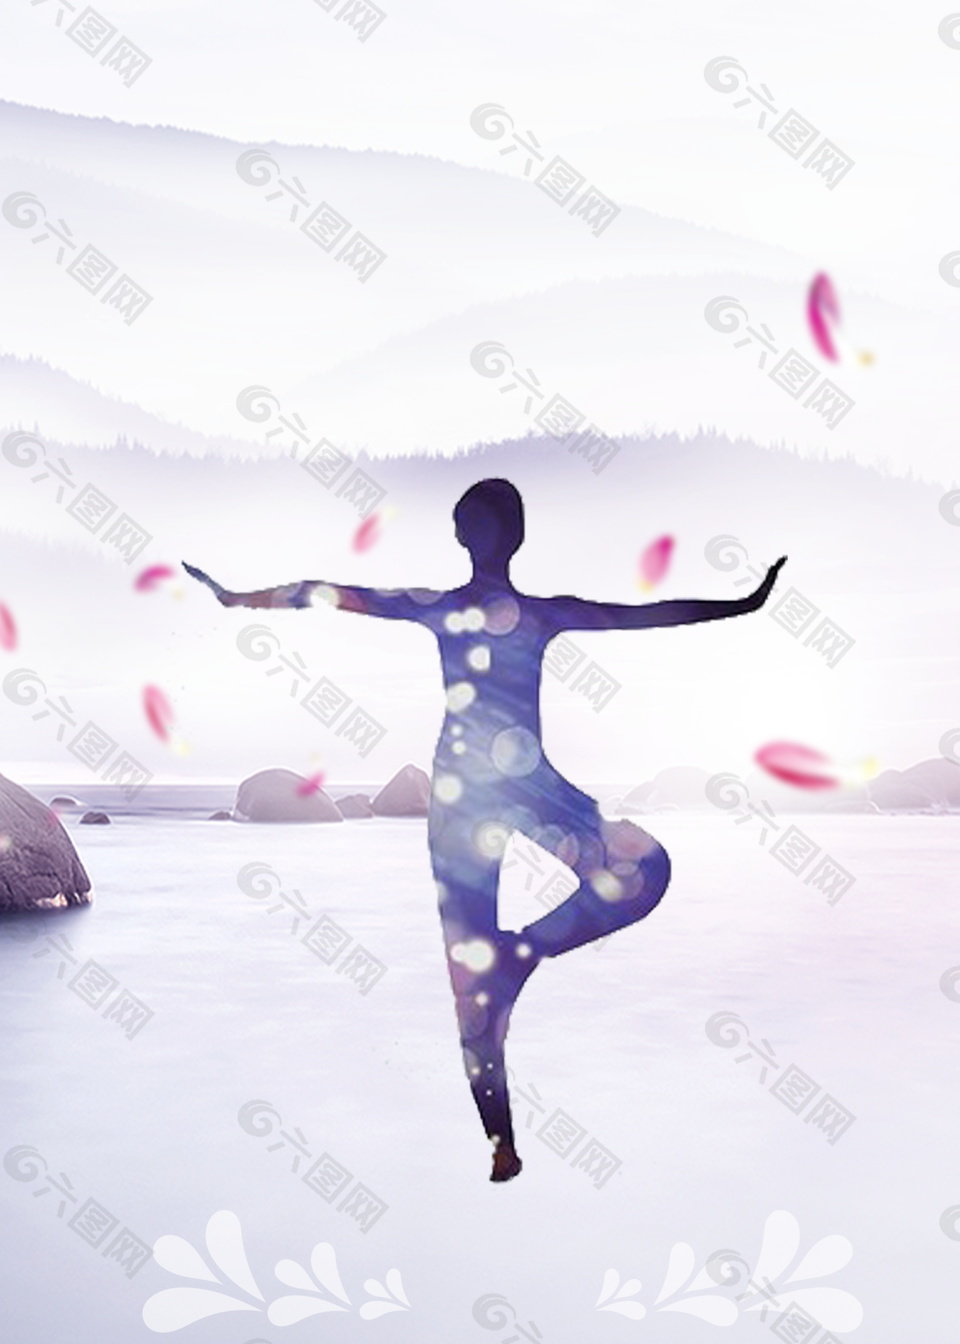 粉色花瓣湖面瑜伽女人广告背景素材